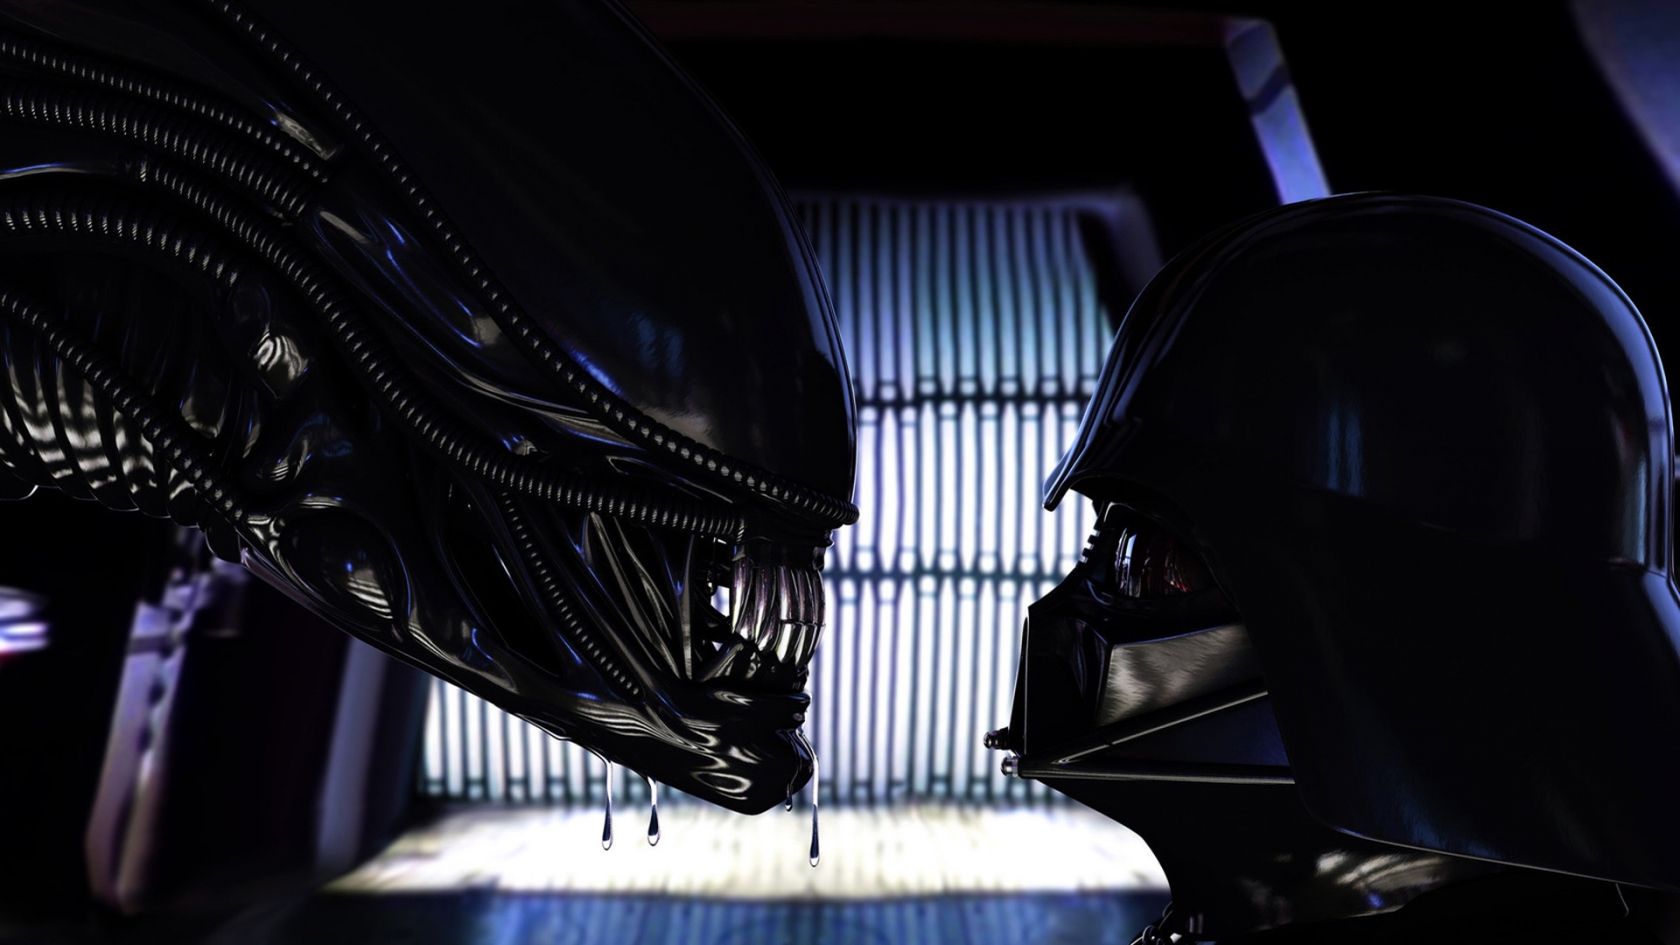 Alien vs Darth Vader for 1680 x 945 HDTV resolution